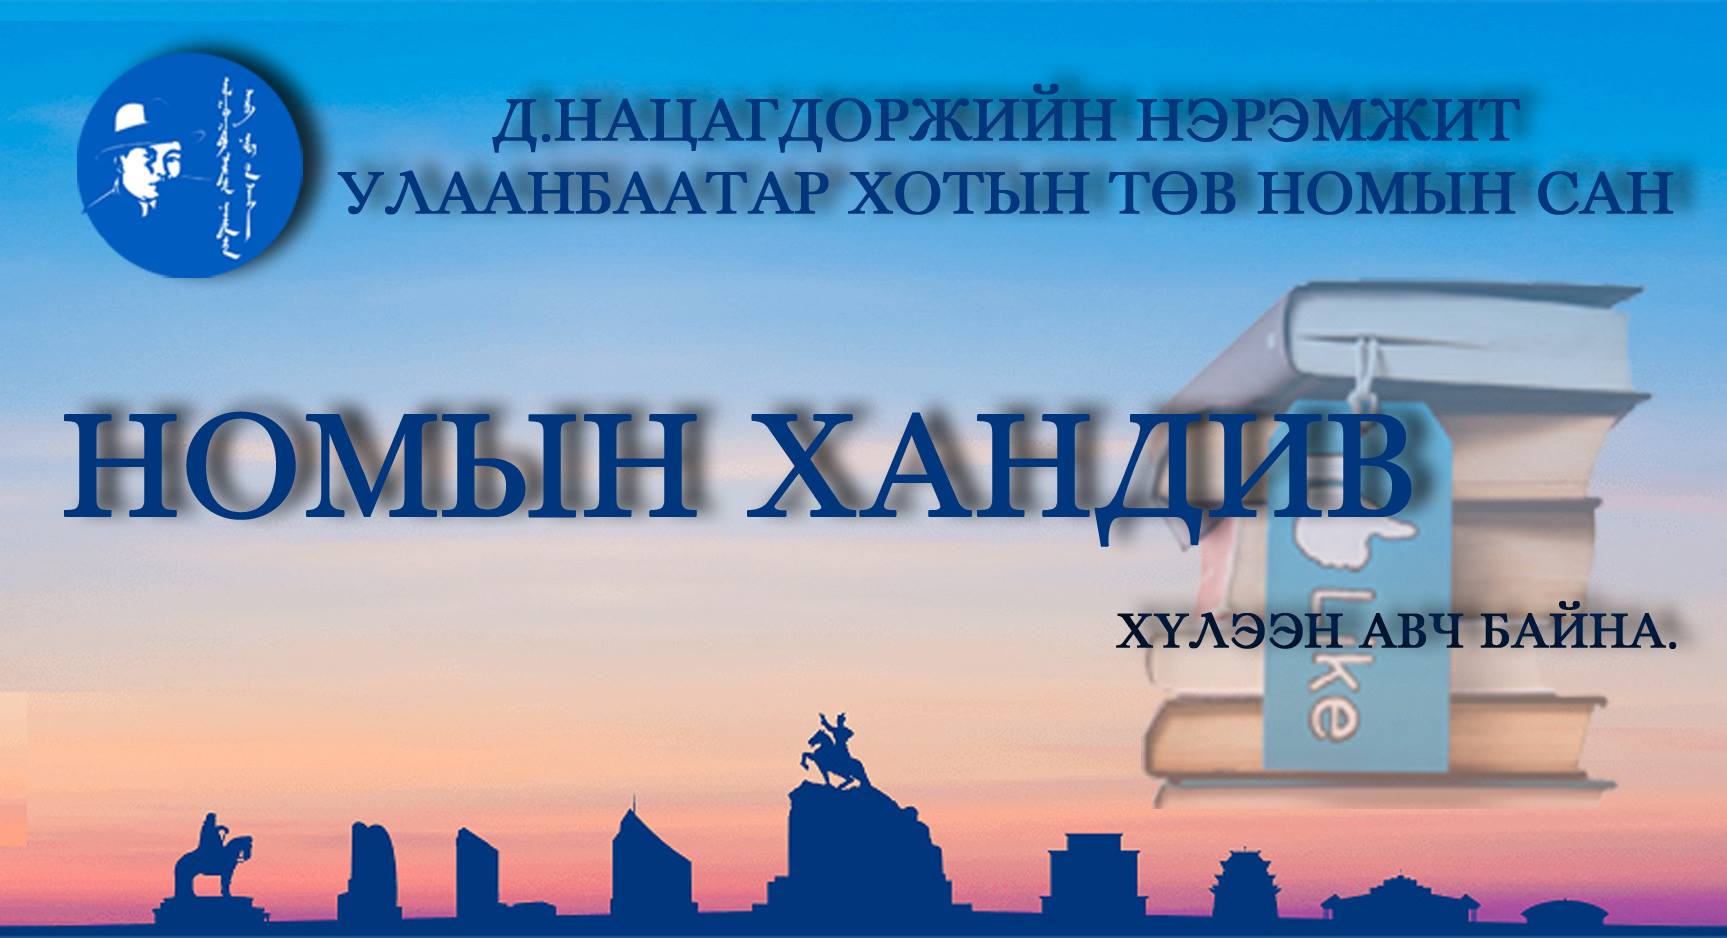 Ulaanabaatar book fair-2018